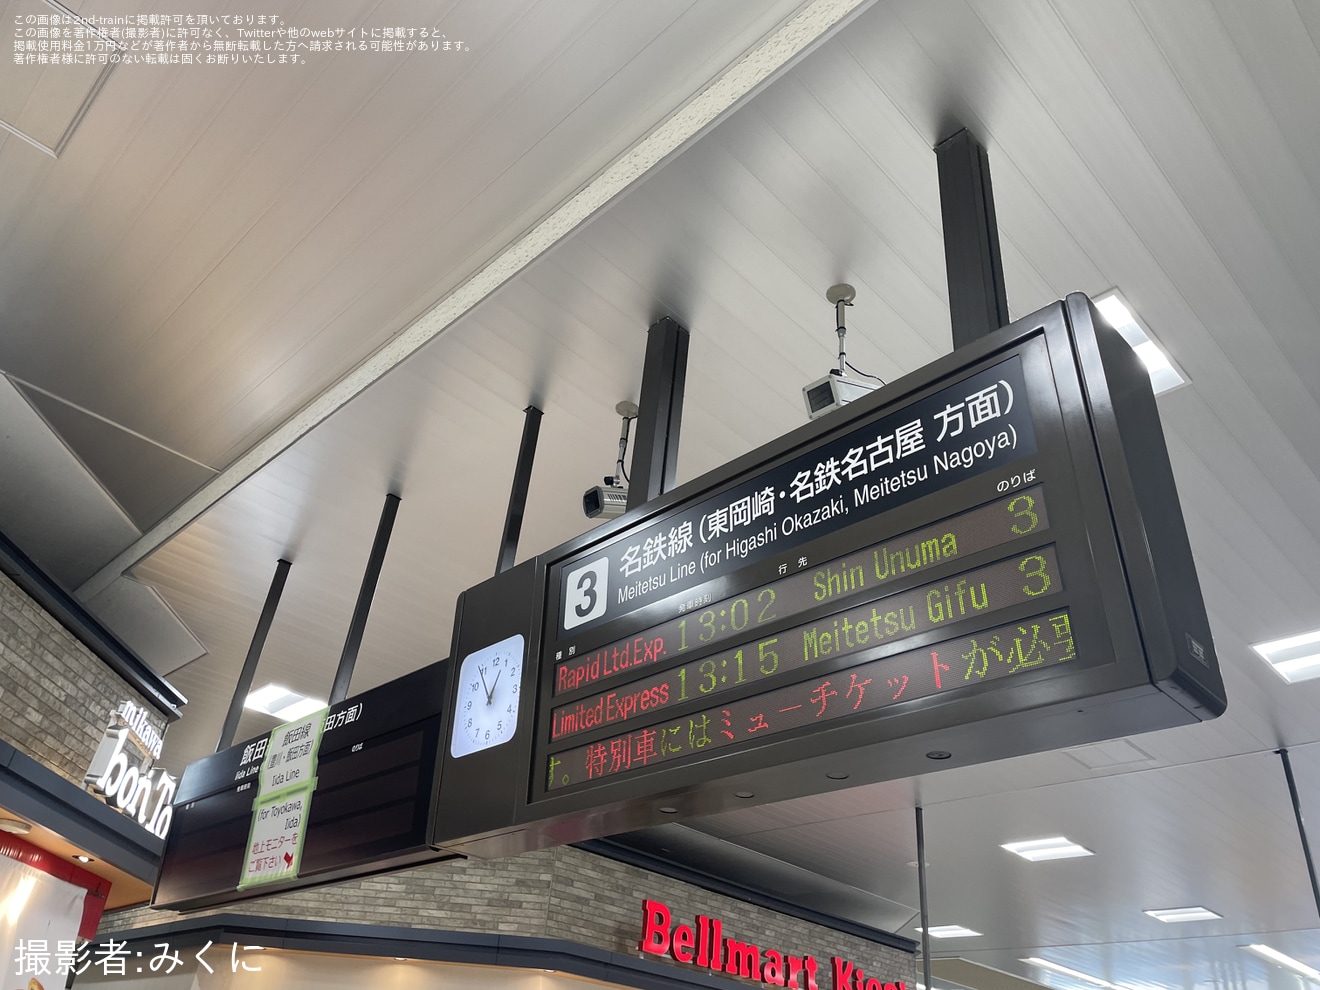 【JR海】豊橋駅の電光掲示板が使用停止となり床置きのLCDにの拡大写真